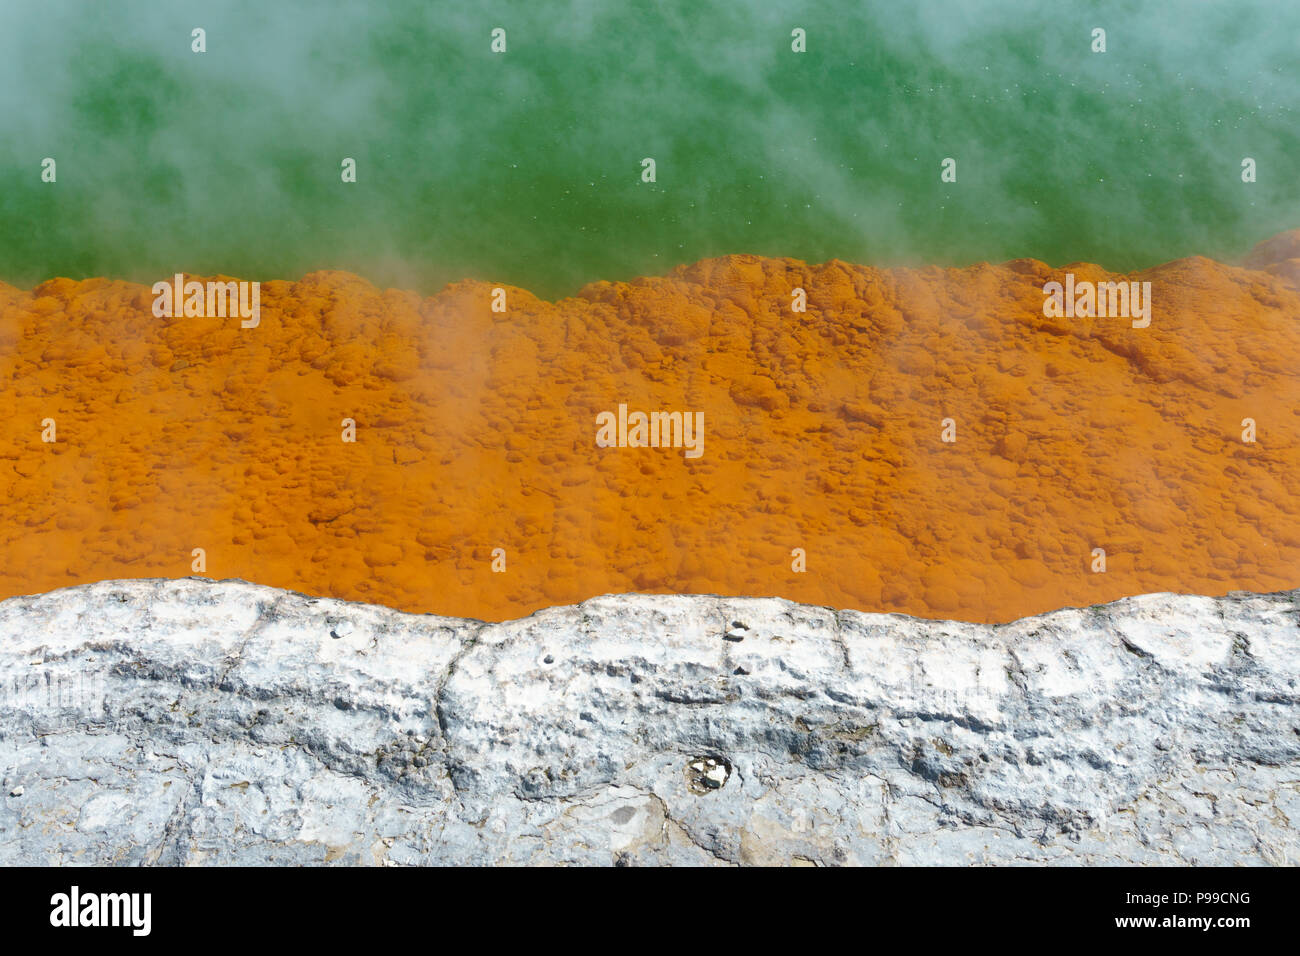 Detail der Rand der Champagne Pool, Wai-O-Tapu geothermale Region, Neuseeland North Island. Die orange Farbe stammt aus Ablagerungen des Arsens. Stockfoto